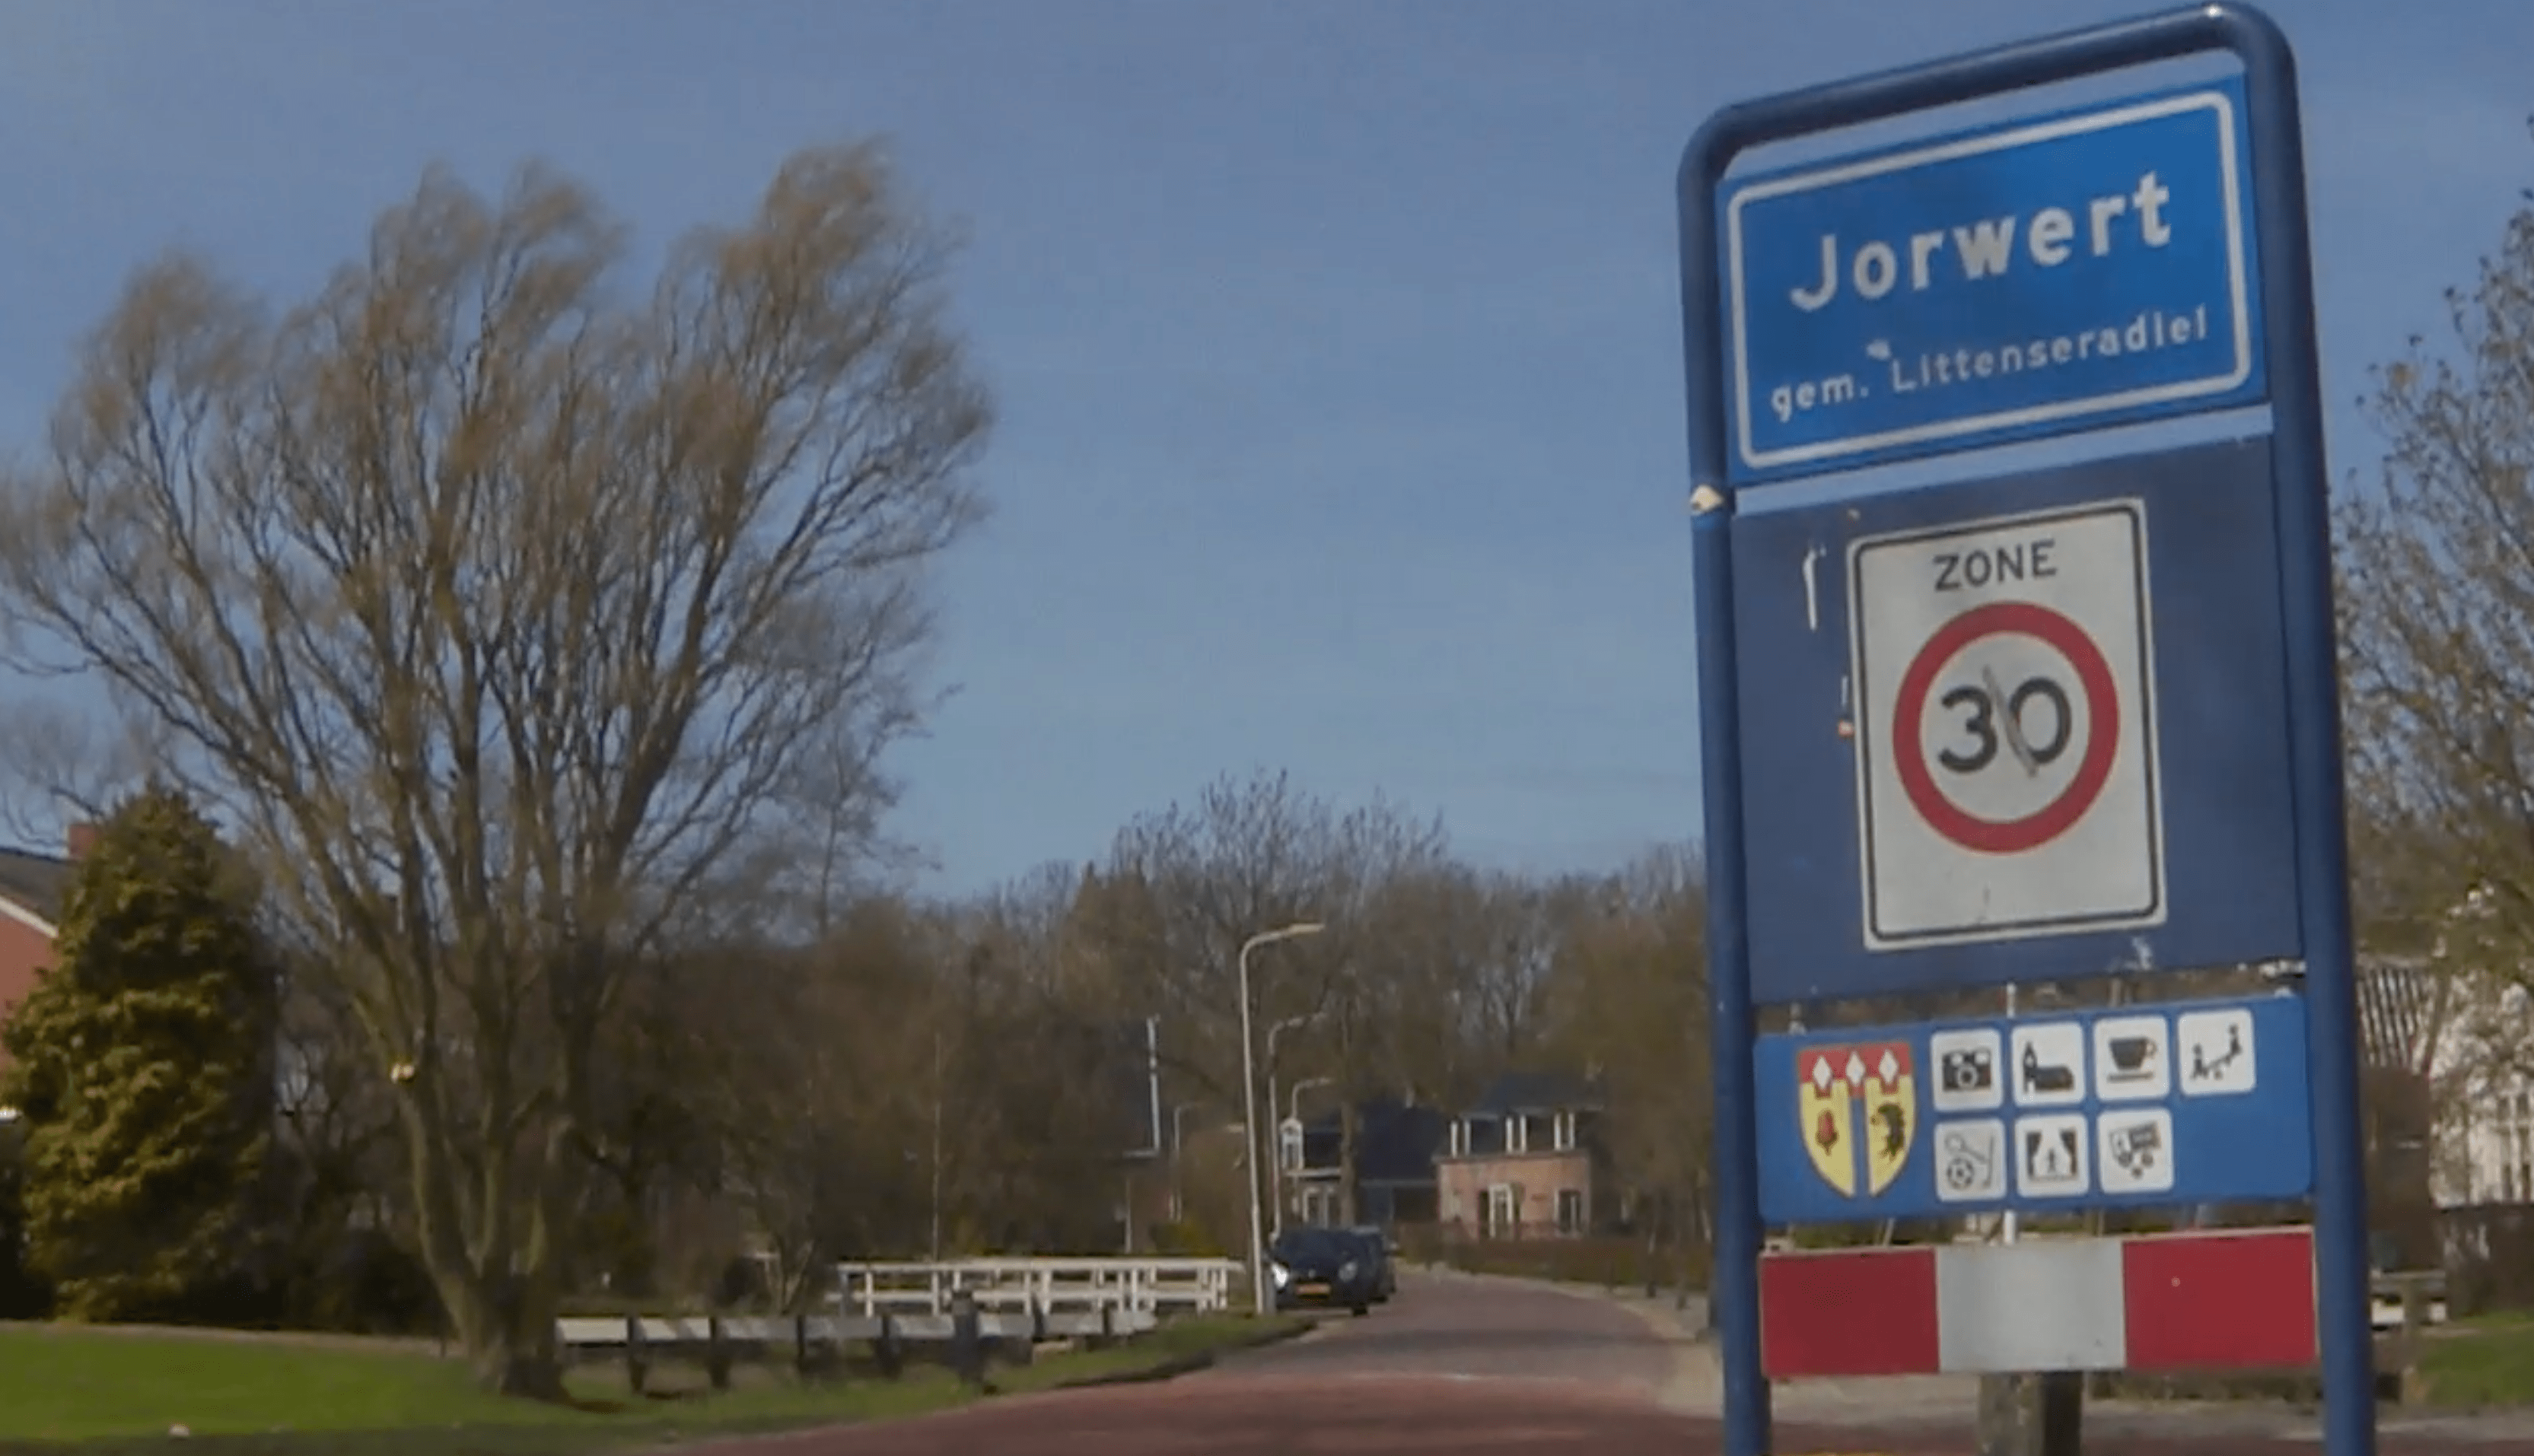 Como a pobreza de transporte se torna tangível em Jorwerd